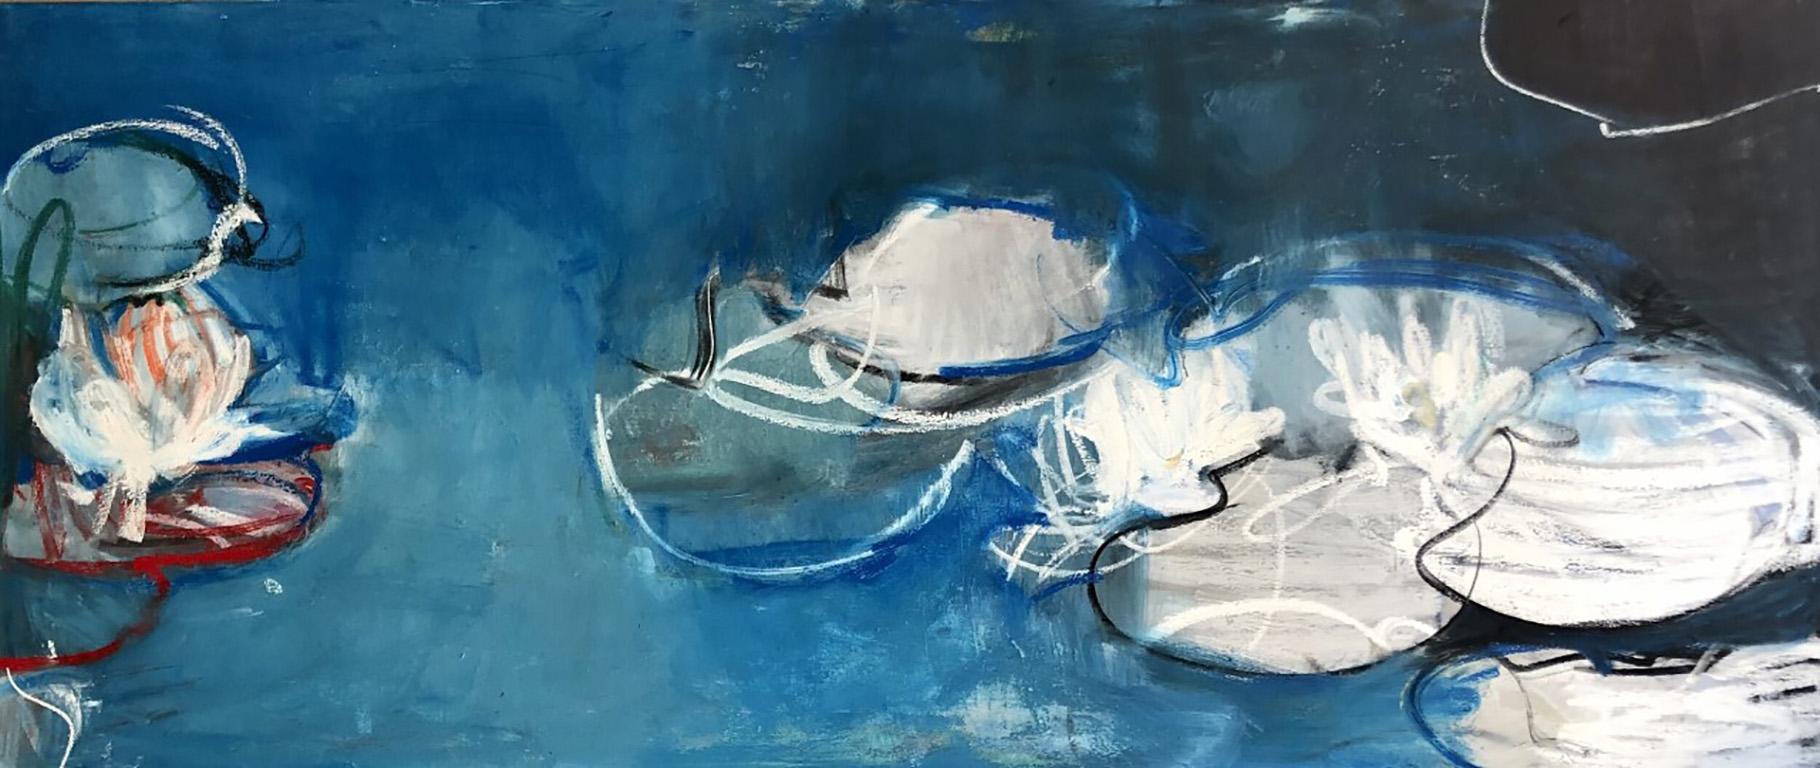 Blaue Seerosen" der französischen Künstlerin Sandrine Kern aus New York City. 2021. Öl und Kaltwachs auf Leinwand, 30 x 70 Zoll. Dieses abstrahierte Landschaftsgemälde zeigt eine Teich- und Seerosenszene in tiefen Farben von Blau, Weiß, Rosa, Rot